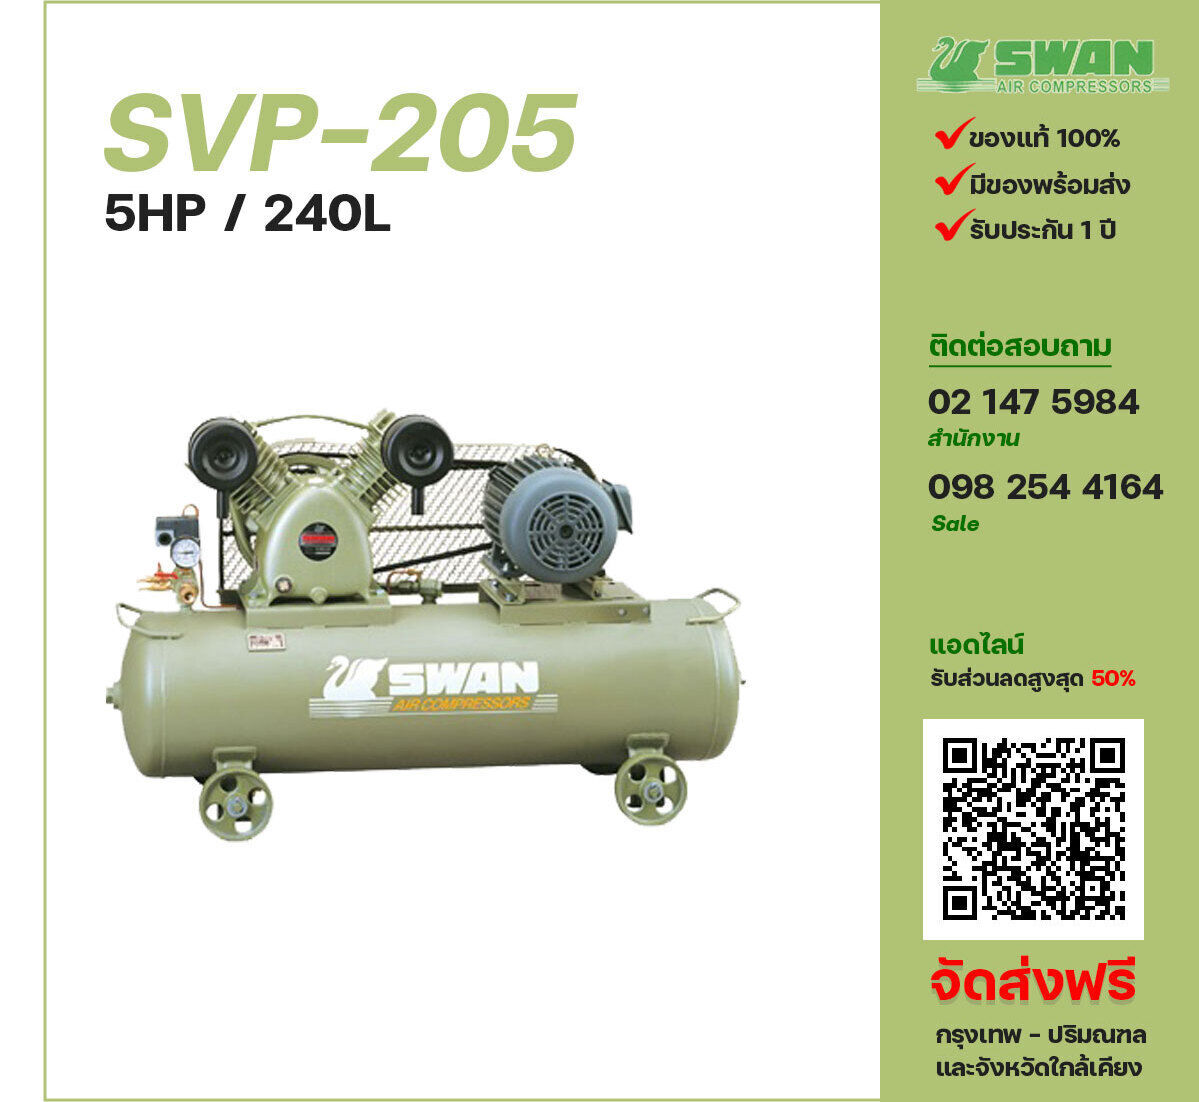 ปั๊มลมสวอน SWAN SVP-205 220V/380V ปั๊มลมลูกสูบ ขนาด 2 สูบ 5 แรงม้า 240 ลิตร SWAN พร้อมมอเตอร์ ไฟ 220V/380V ส่งฟรี กรุงเทพฯ-ปริมณฑล รับประกัน 1 ปี